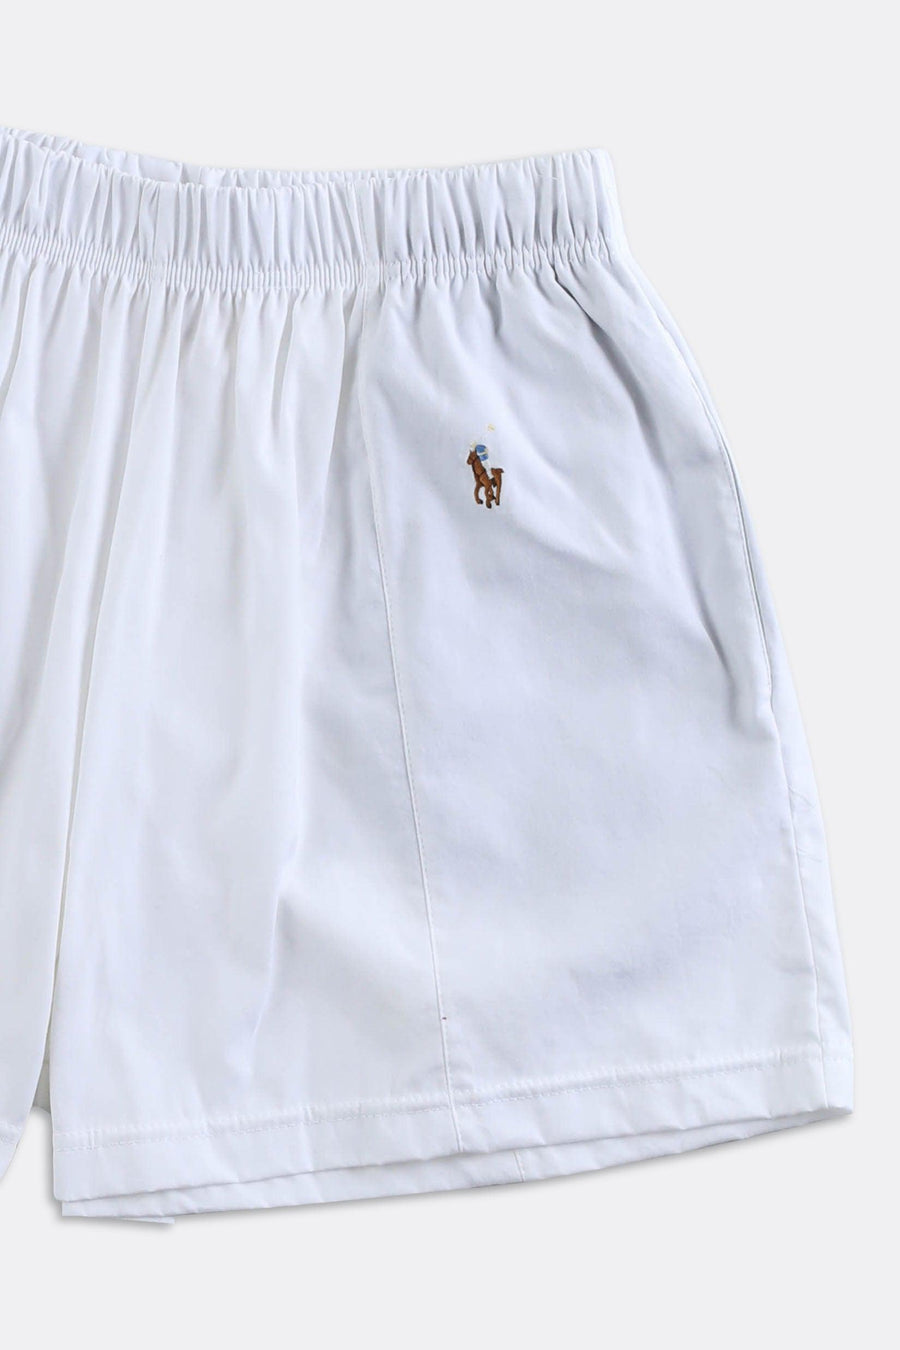 Rework Polo Oxford Mini Boxer Shorts - XS, S, M, L, XL